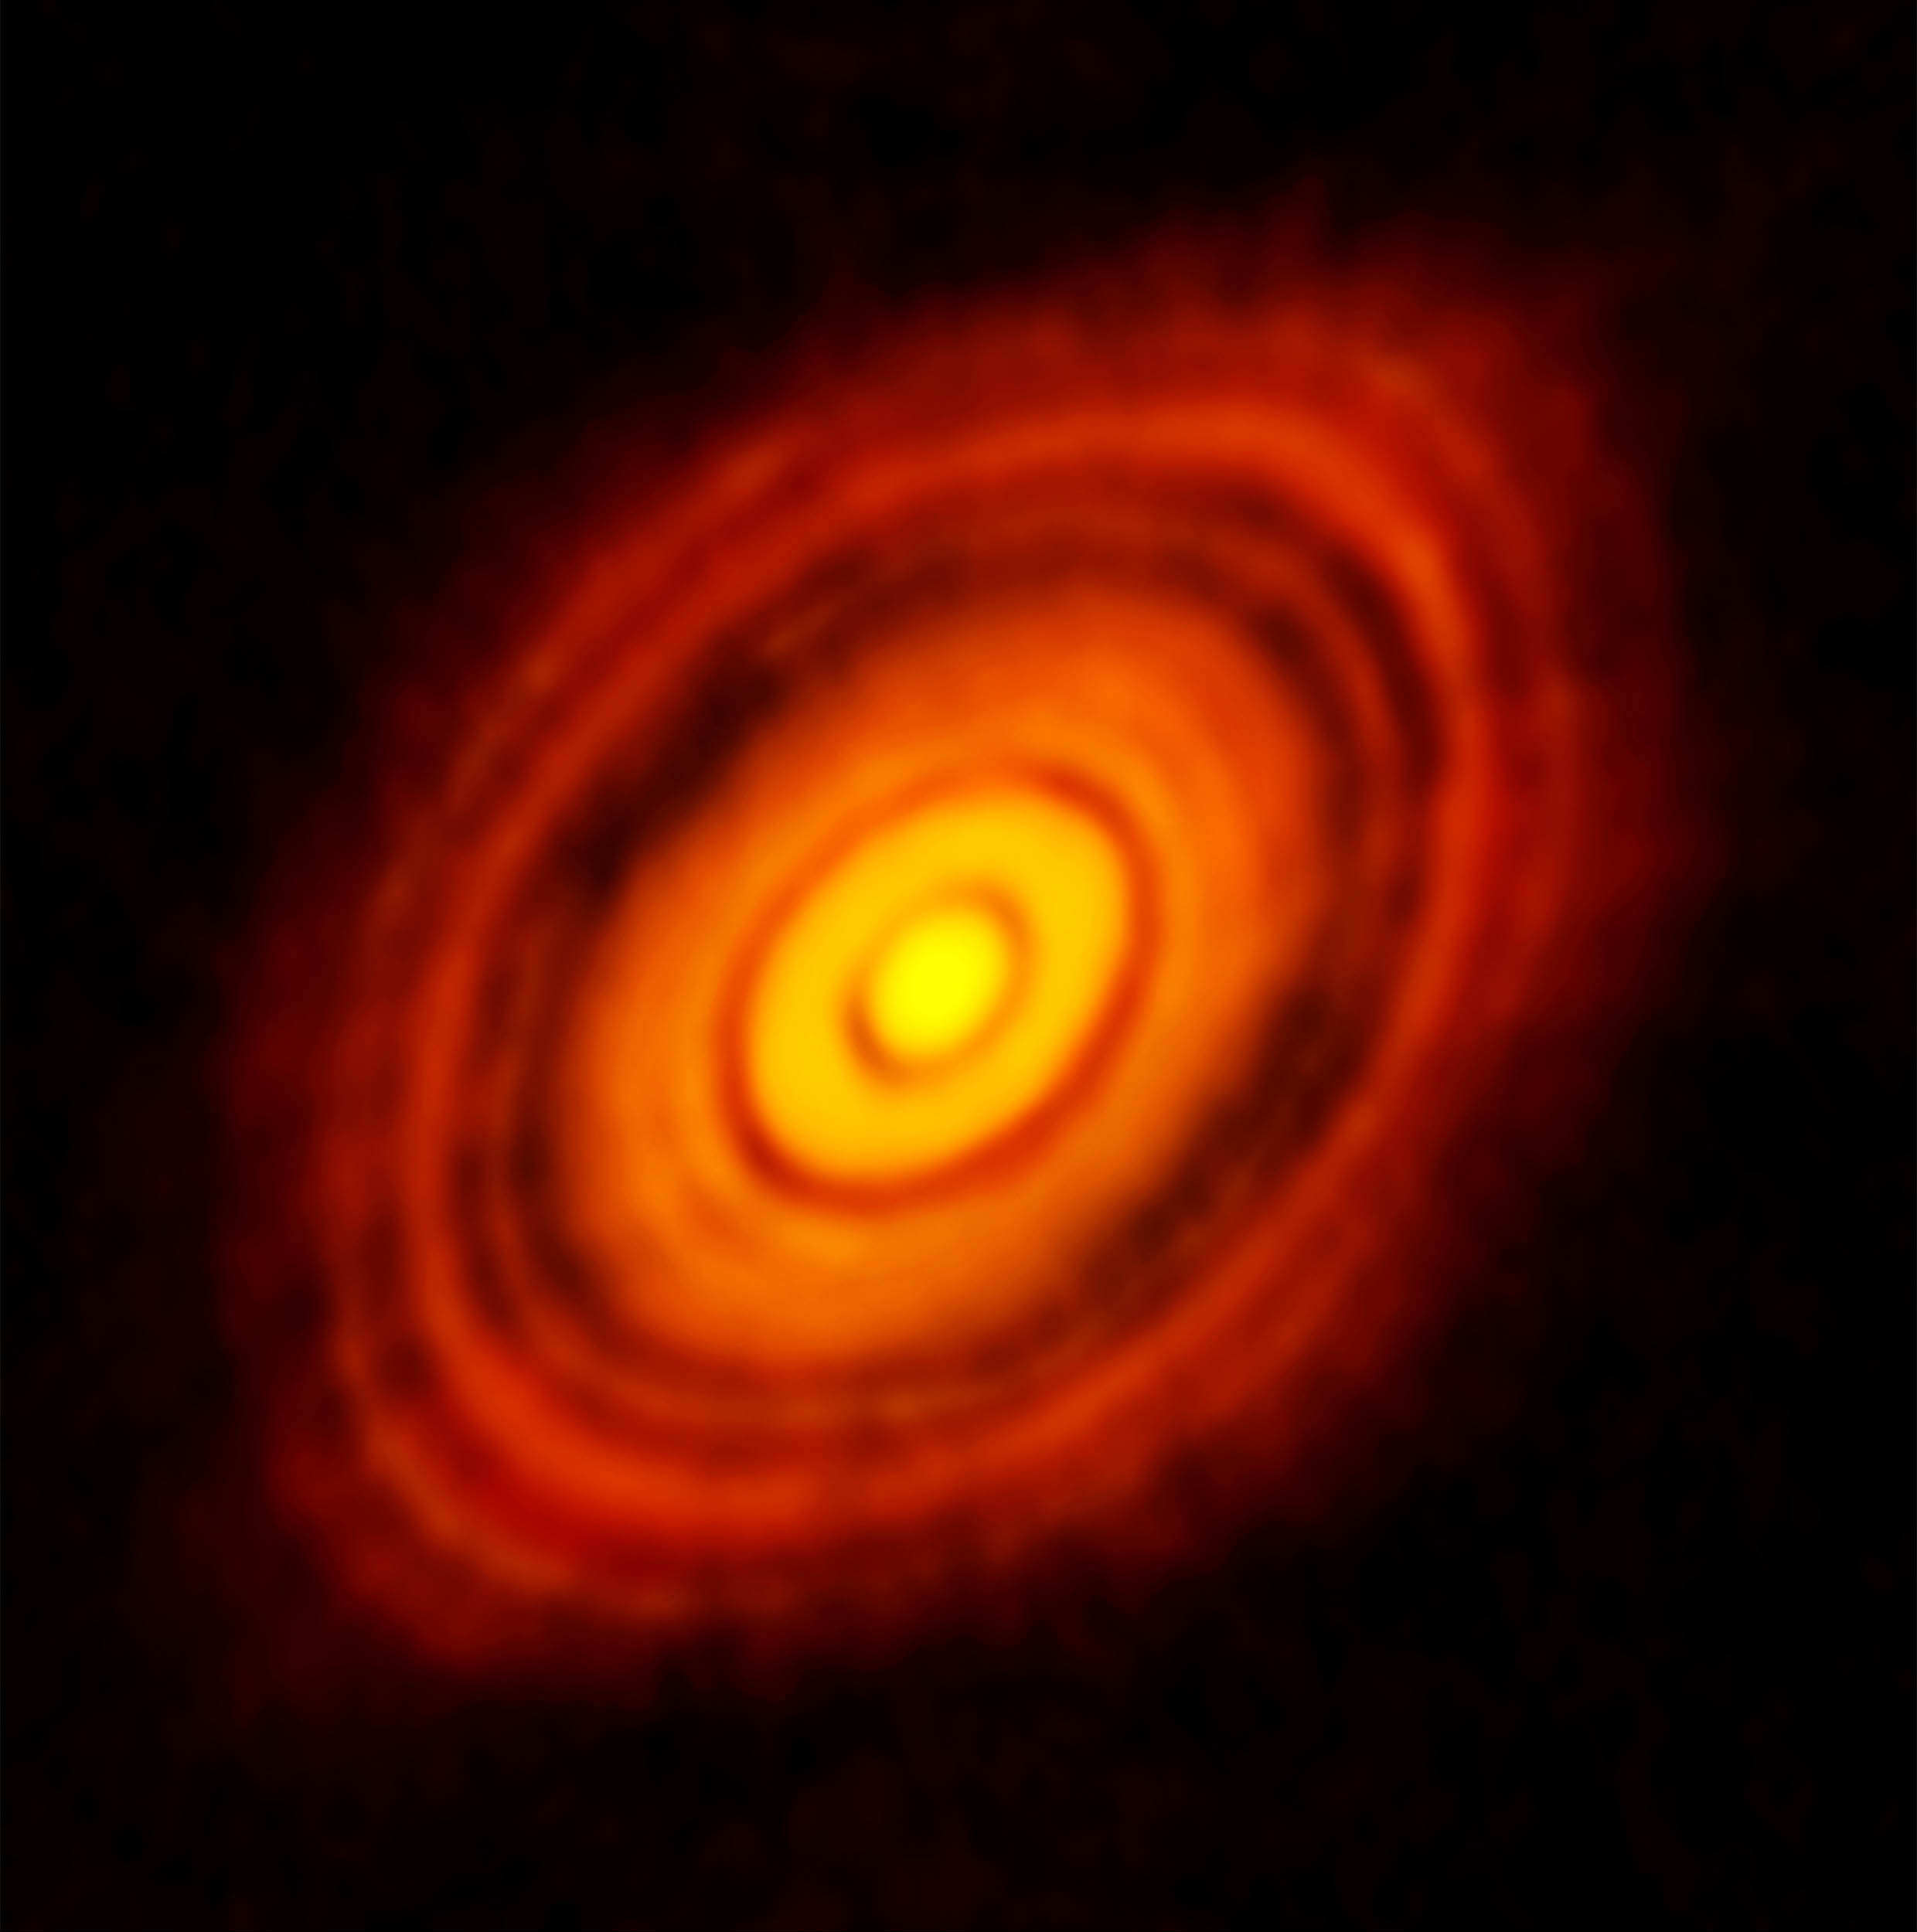 這張是拍攝連續光譜，得到金牛座 HL 原行星盤的塵埃分布，清楚呈現環與間隙的構造。圖│ALMA (ESO/NAOJ/NRAO)